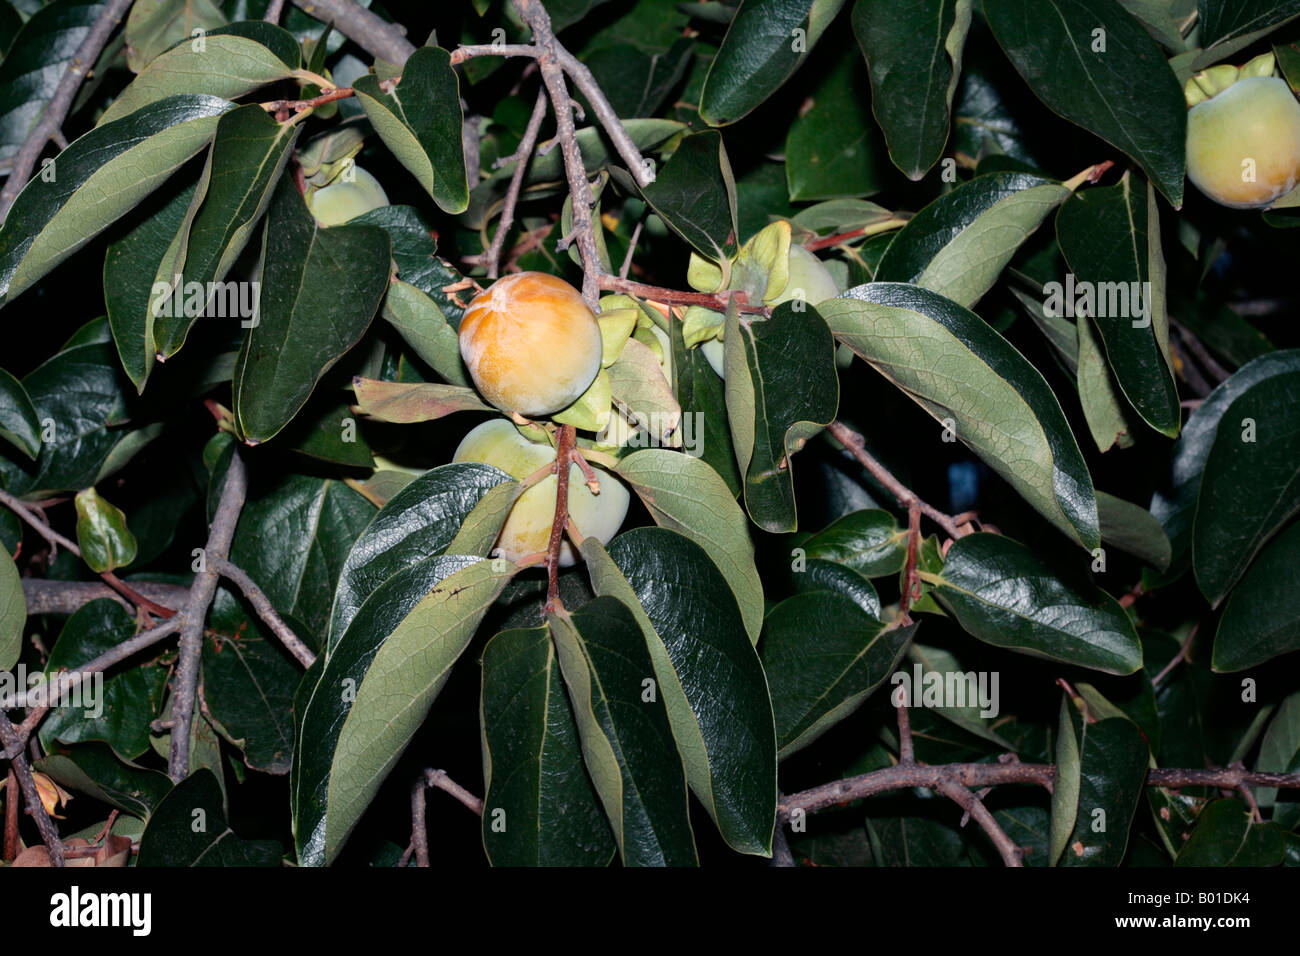 Young Japanese Date Plum Fruit/Kaki Tree/Persimmon-Diospyros kaki-Family Ebenaceae Stock Photo